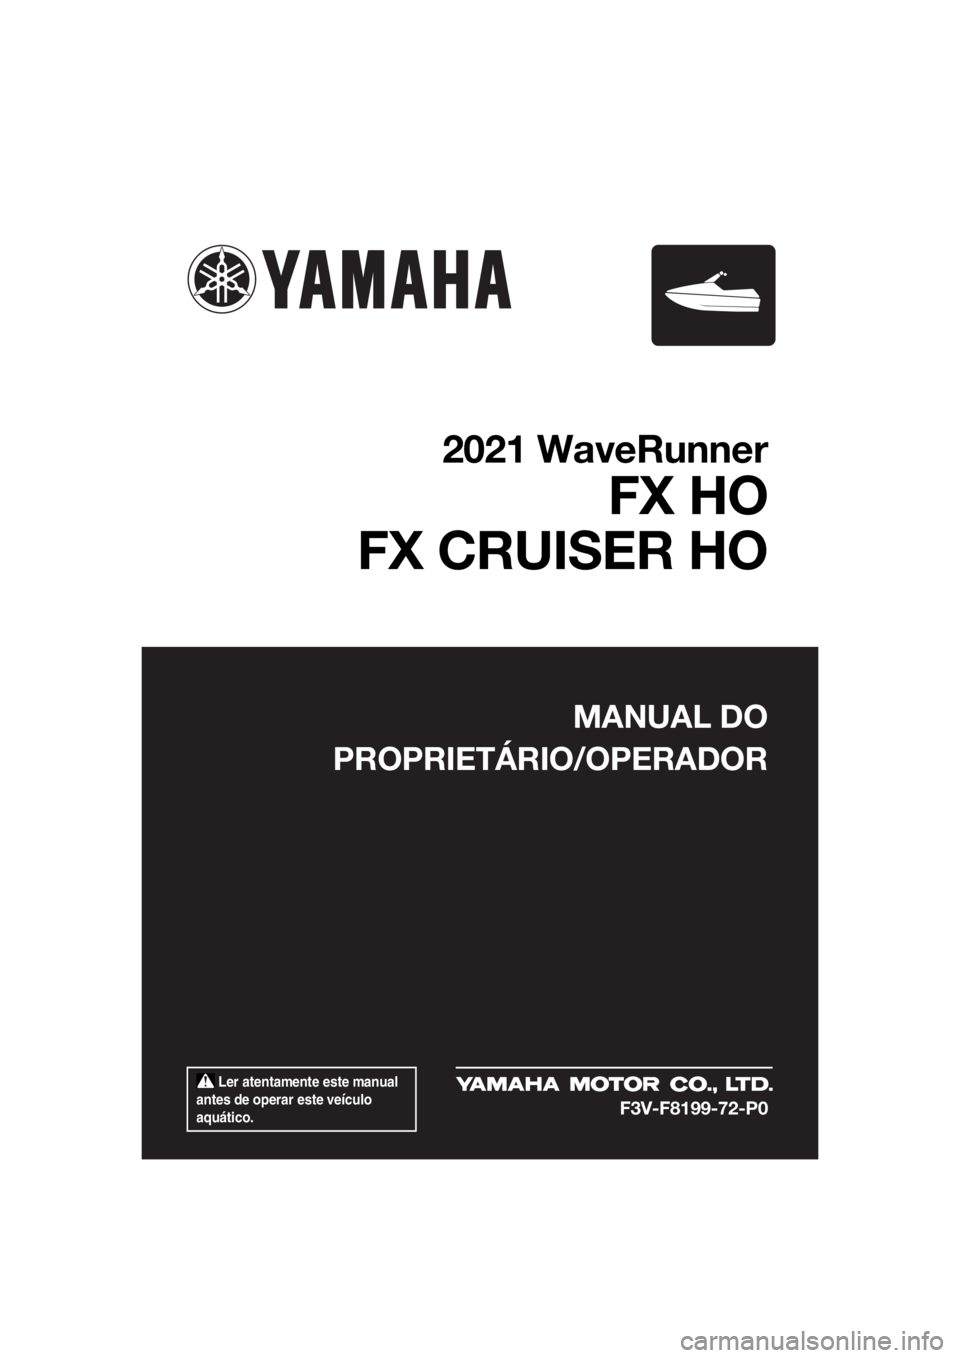 YAMAHA FX HO CRUISER 2021  Manual de utilização (in Portuguese)  Ler atentamente este manual 
antes de operar este veículo 
aquático.
MANUAL DO
PROPRIETÁRIO/OPERADOR
2021 WaveRunner
FX HO
FX CRUISER HO
F3V-F8199-72-P0
UF3V72P0.book  Page 1  Tuesday, June 16, 20